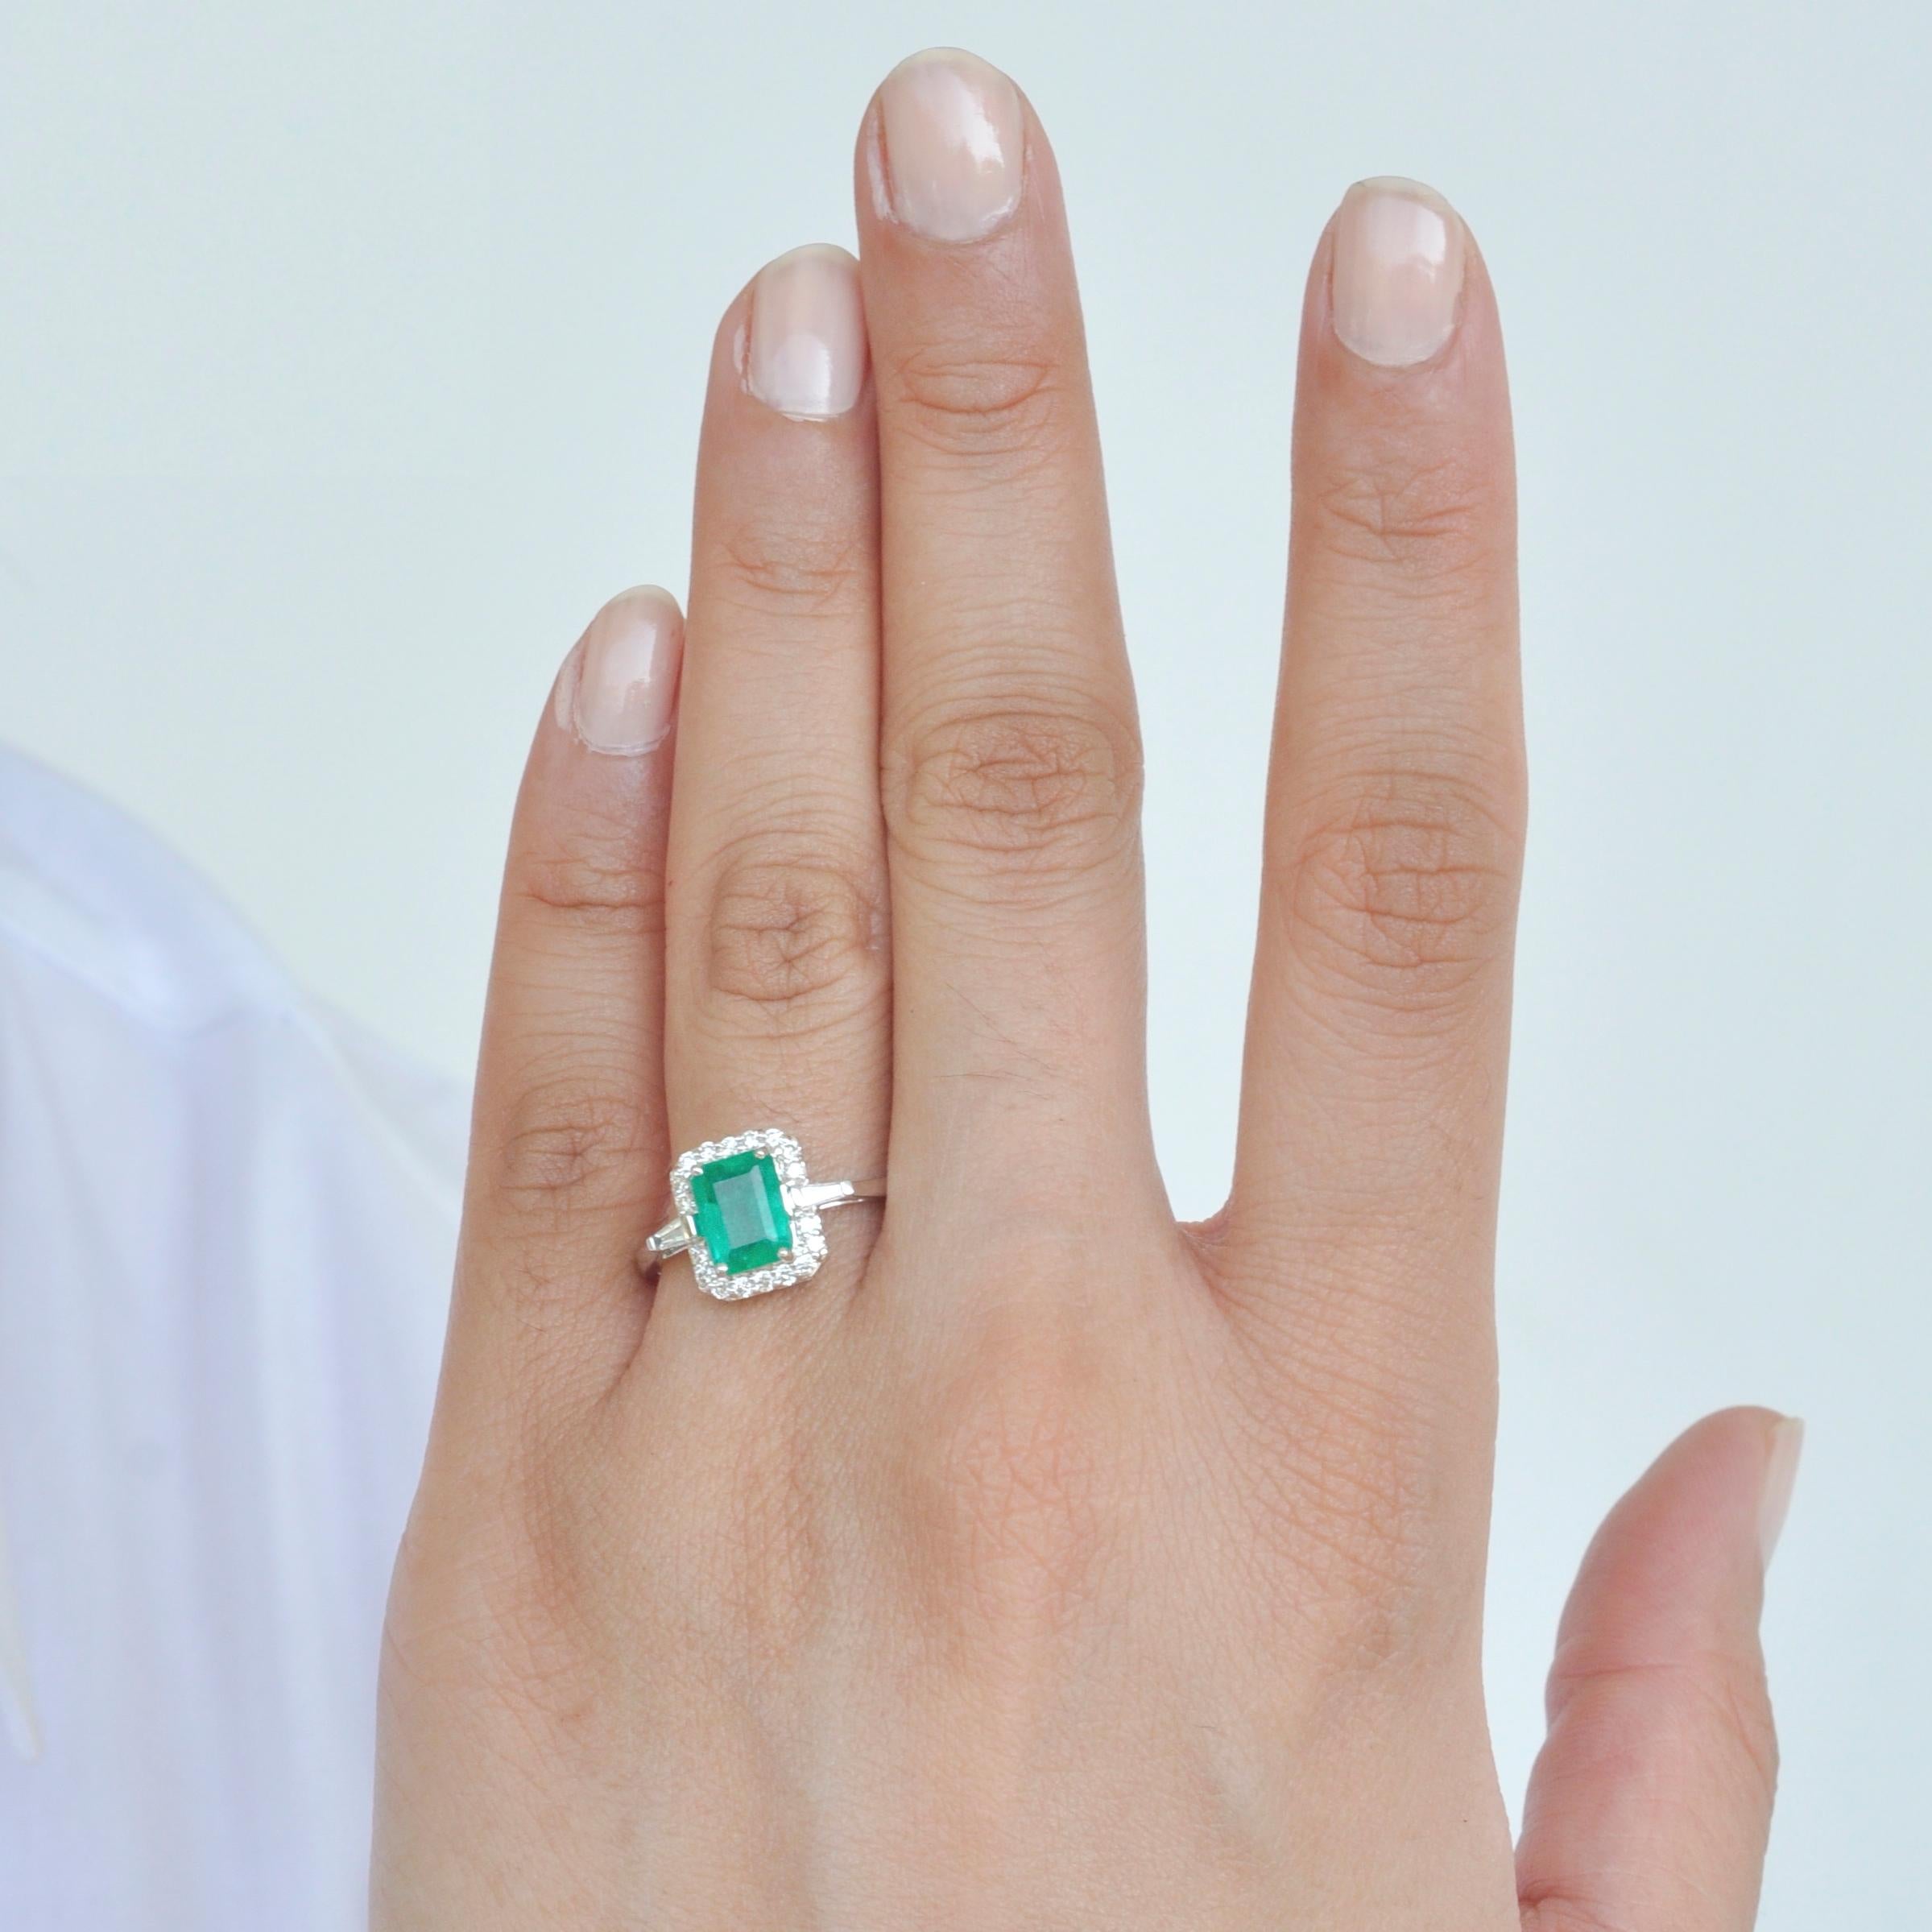 18 Karat Weißgold Smaragdschliff 8 x 6 mm kolumbianischer Smaragd Diamant zeitgenössischer Ring geeignet für Braut und Verlobung Gelegenheiten. 
Dieser Smaragd-Diamantring verkörpert Schlichtheit und Eleganz. Der kolumbianische Smaragd wird von